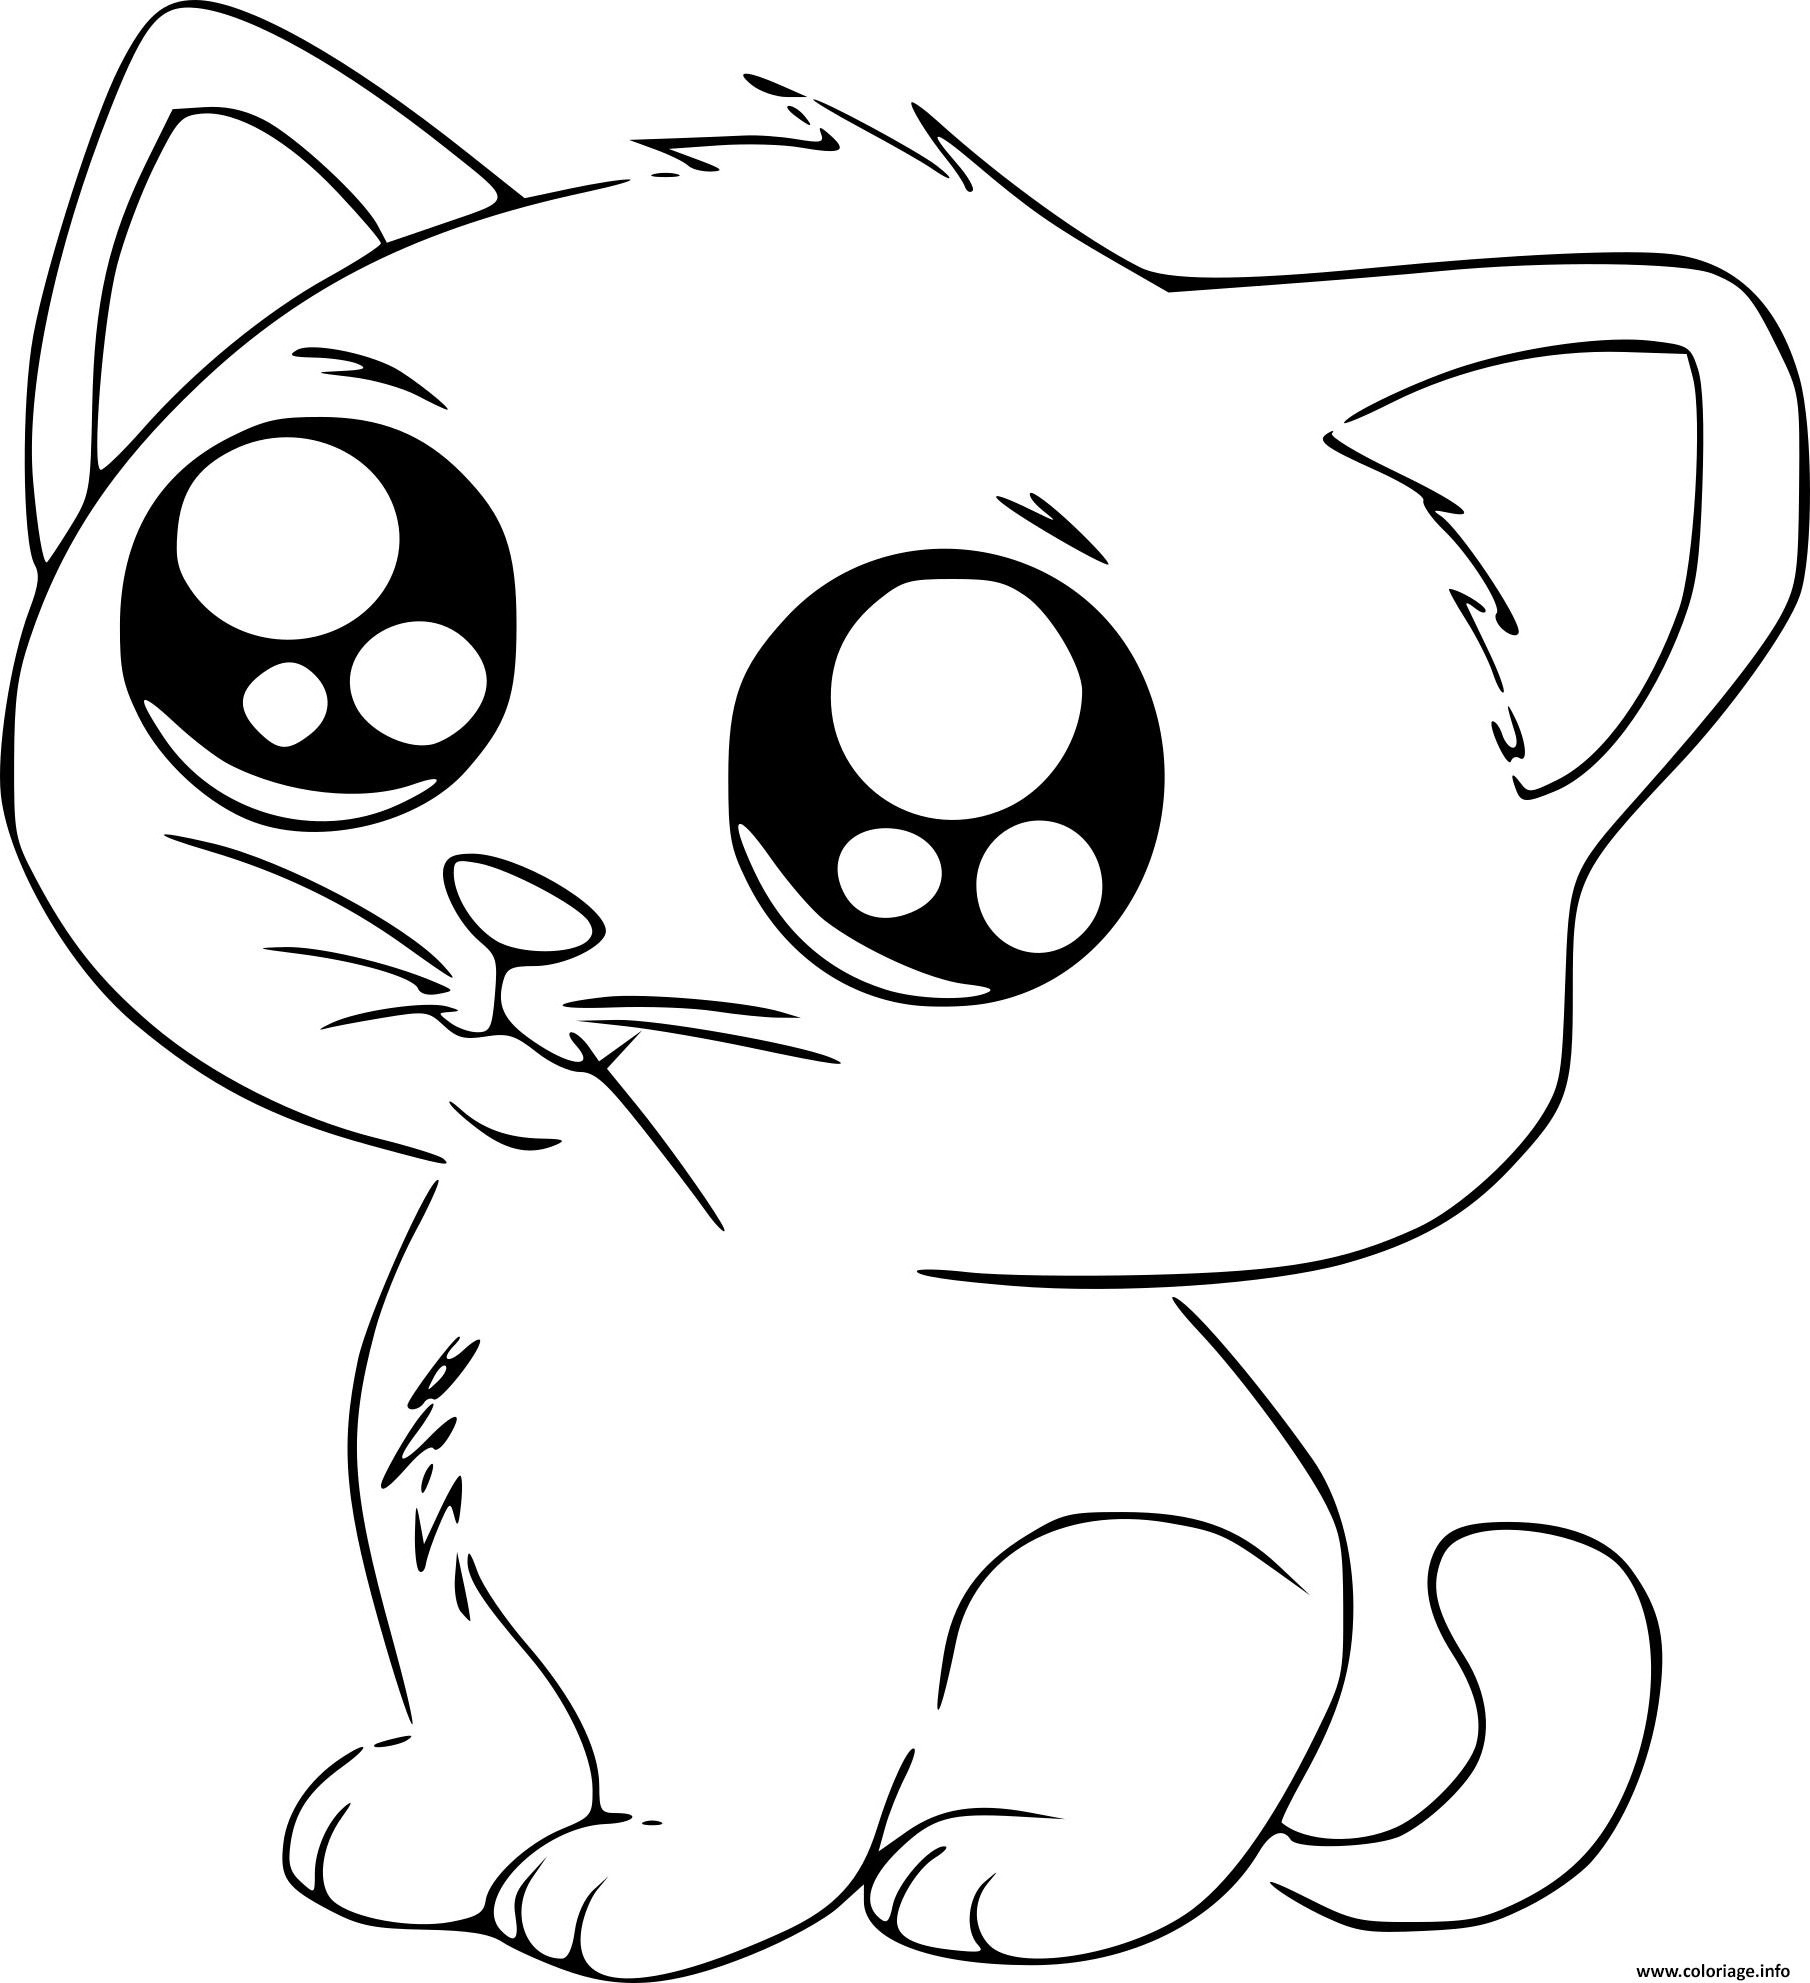 dessin de chaton kawaii nouveau photographie coloriage chat manga cute mignon dessin